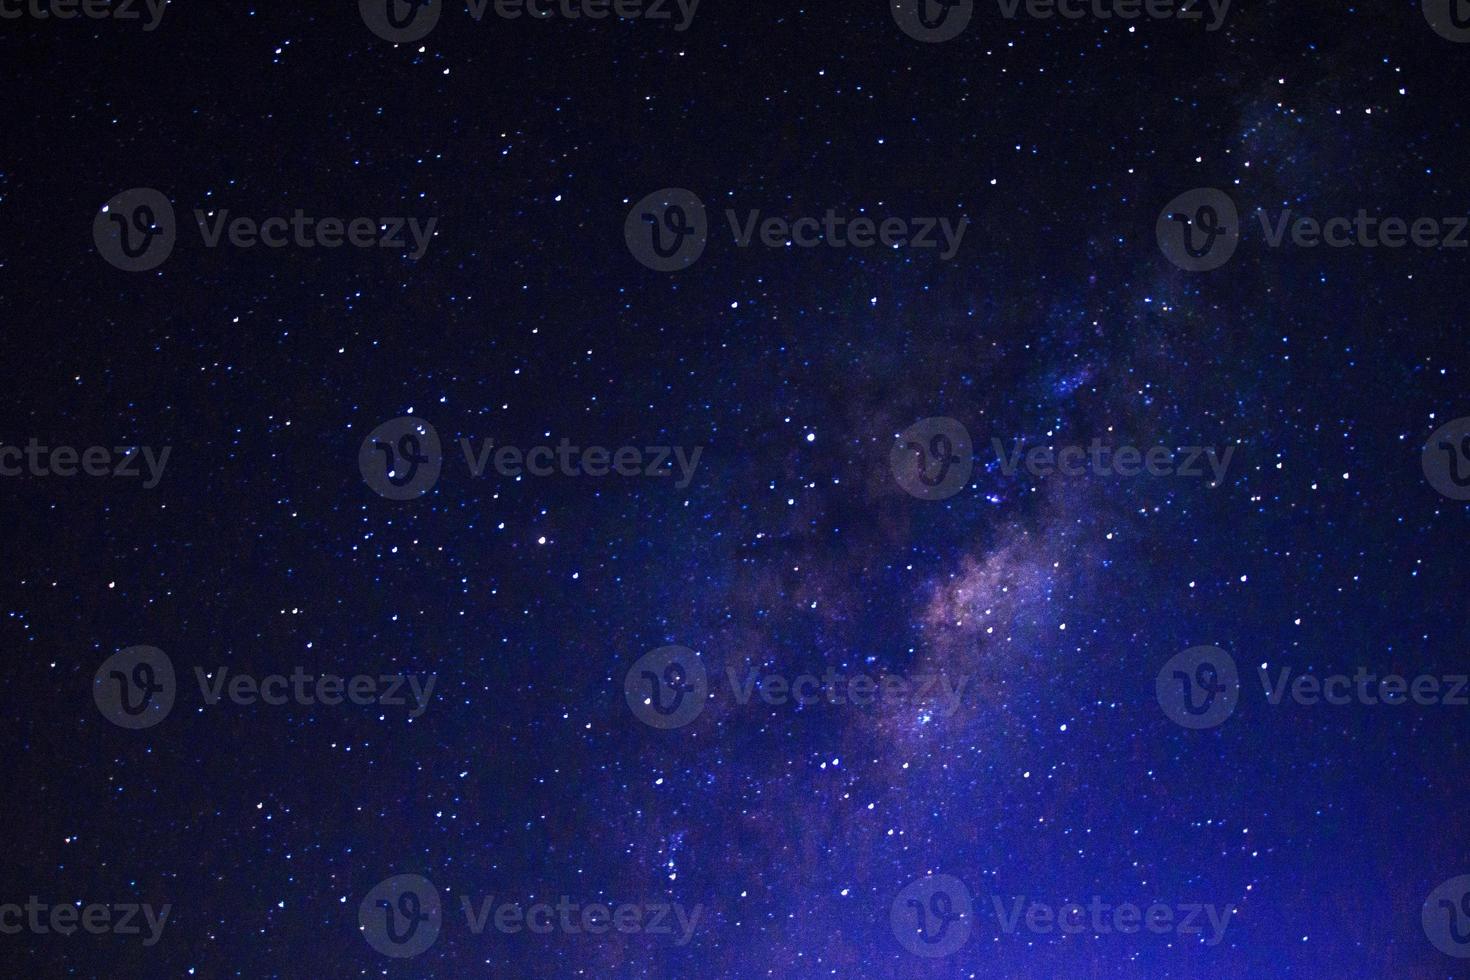 spazio blu scuro cielo galassia e stelle bellissimo universo. sfondo dello spazio con la galassia in nero. foto